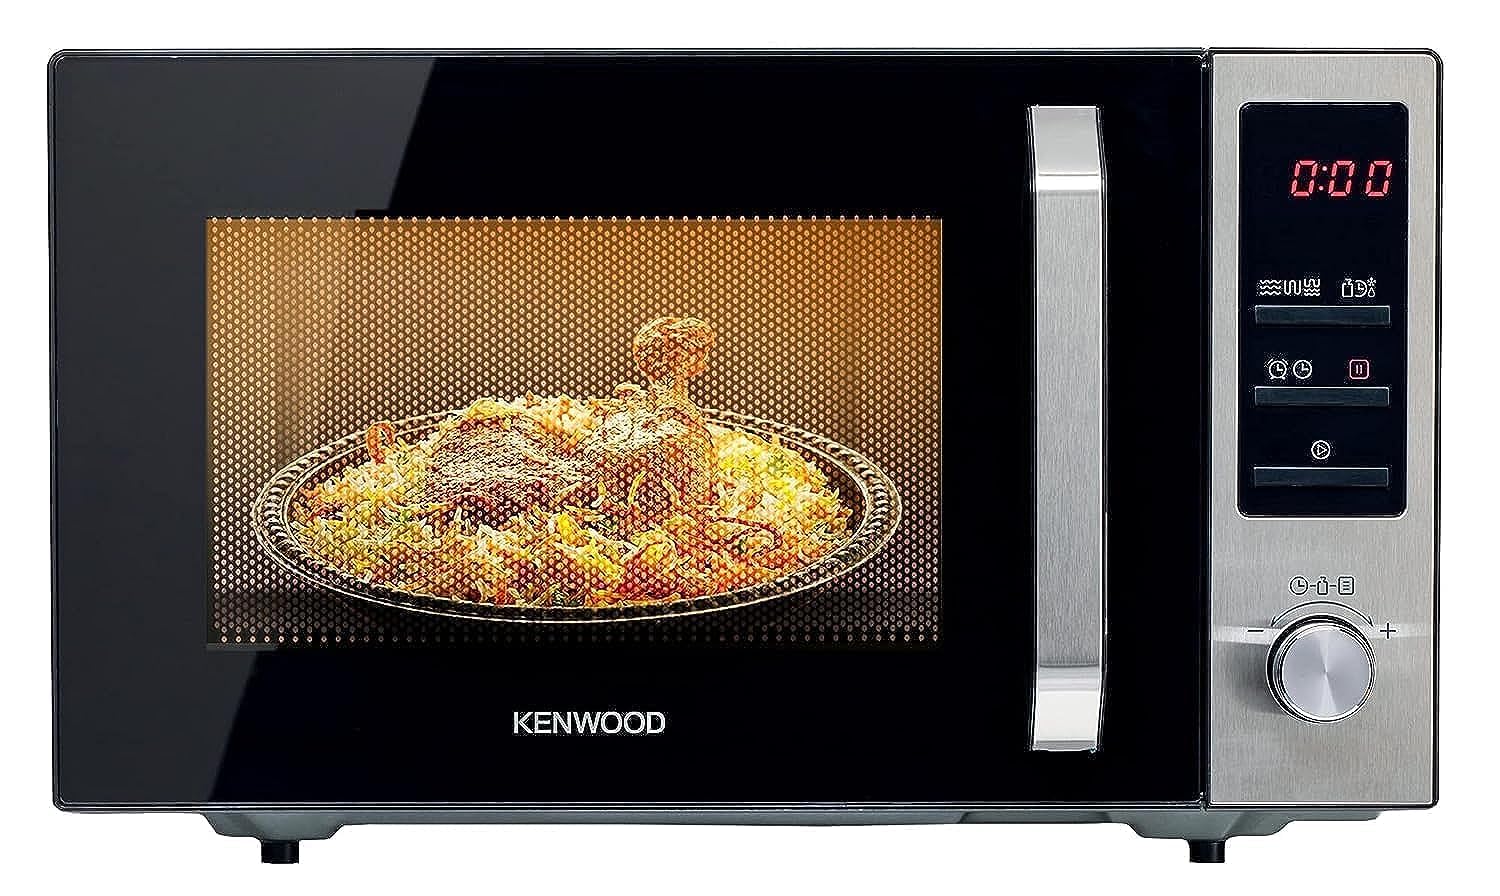 KENWOOD 25L Microwave Oven with Grill, Digital Display, فرن ميكروويف 25 لتر من الستانلس ستيل مع شواية من كينوود مزود بشاشة رقمية